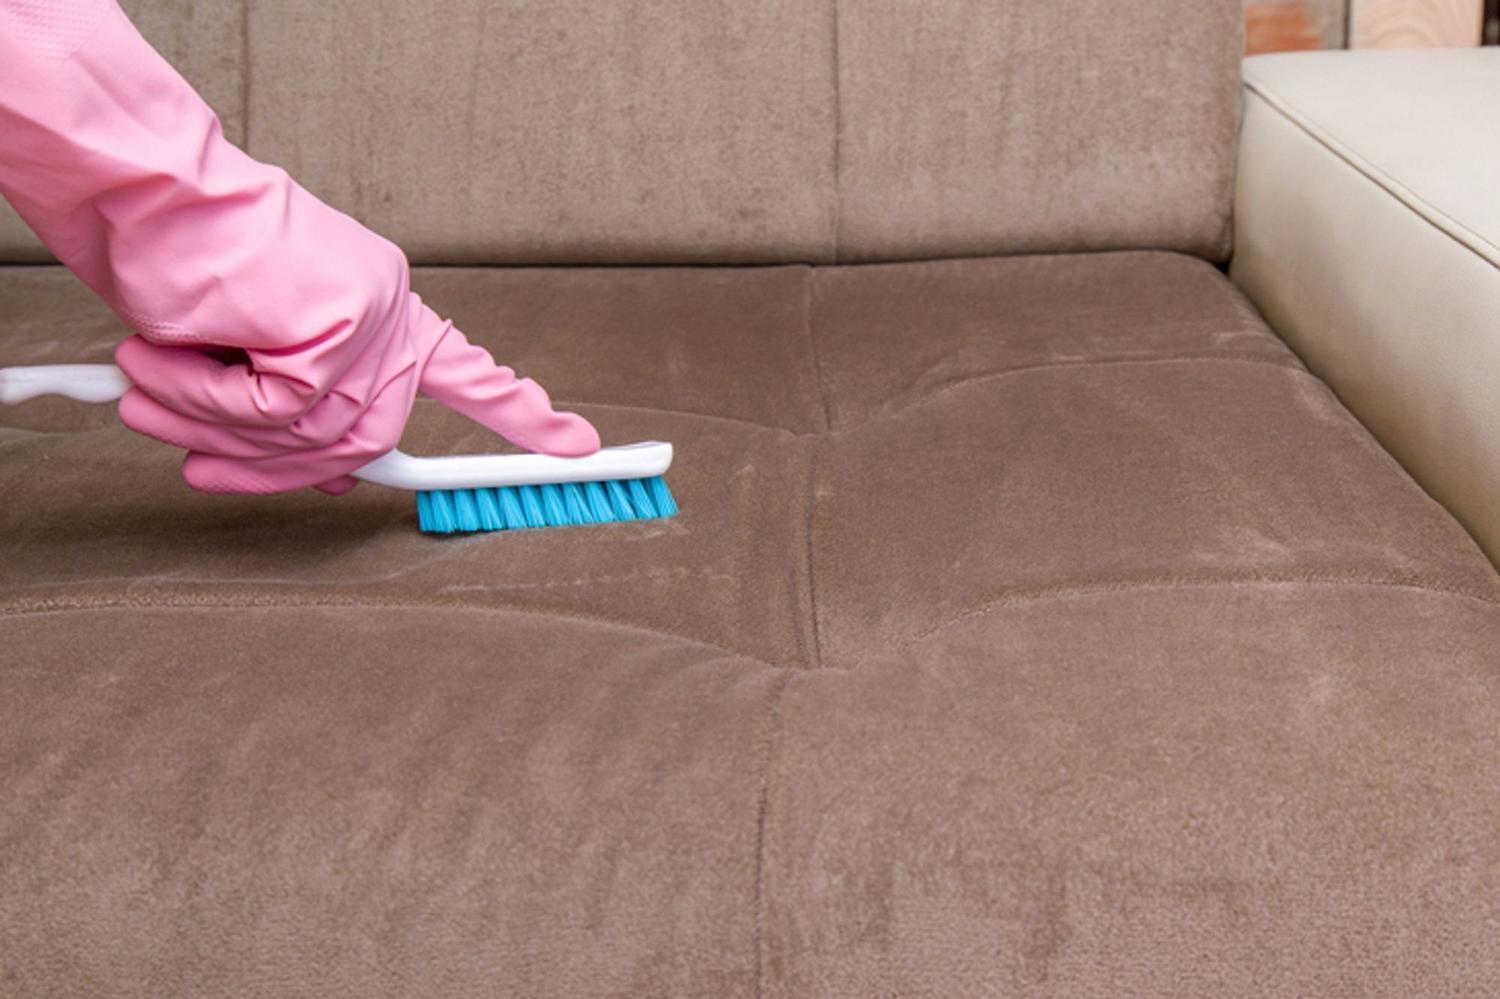 Comment nettoyer un canapé en microfibre ? – Astuces de grand mère